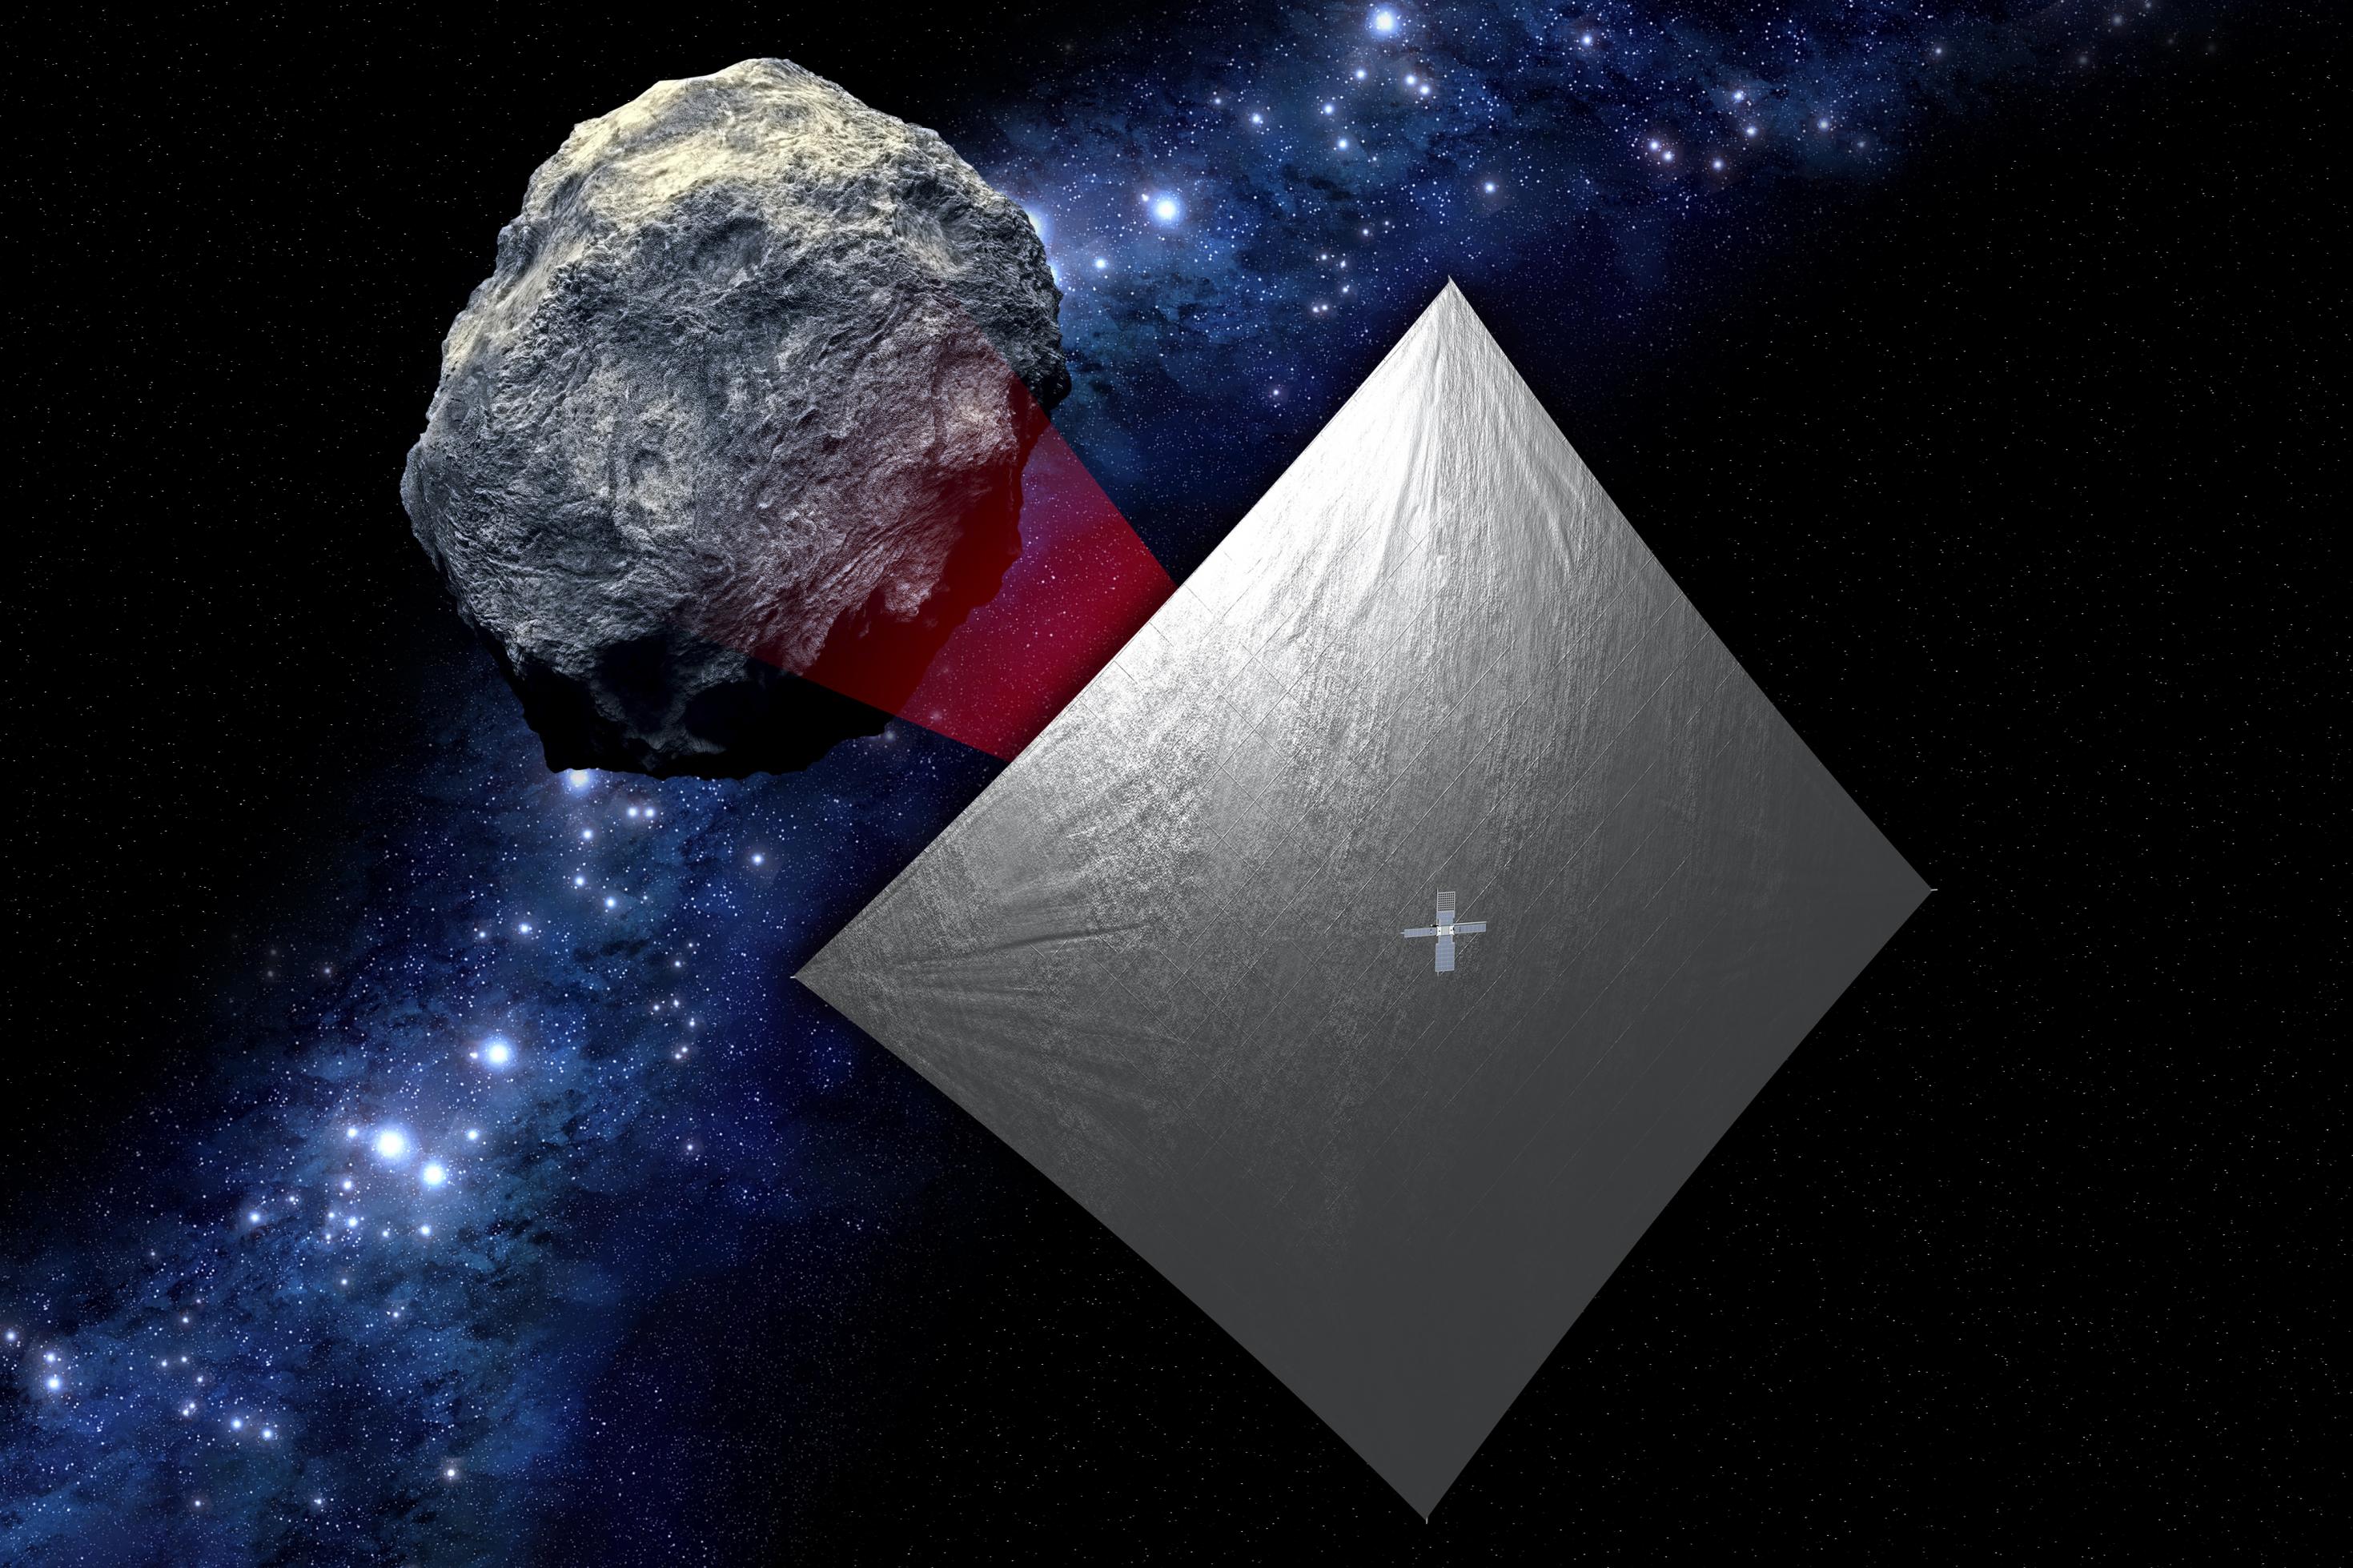 Ein Weltraumbild, in dessem Hintergrund das Schwarz des Weltalls zu sehen ist. Im Vordergrund befinden sich ein Asteroid (links) und eine Raumsonde, die mit einem großen Segel angetrieben und von diesem verdeckt wird (rechts).